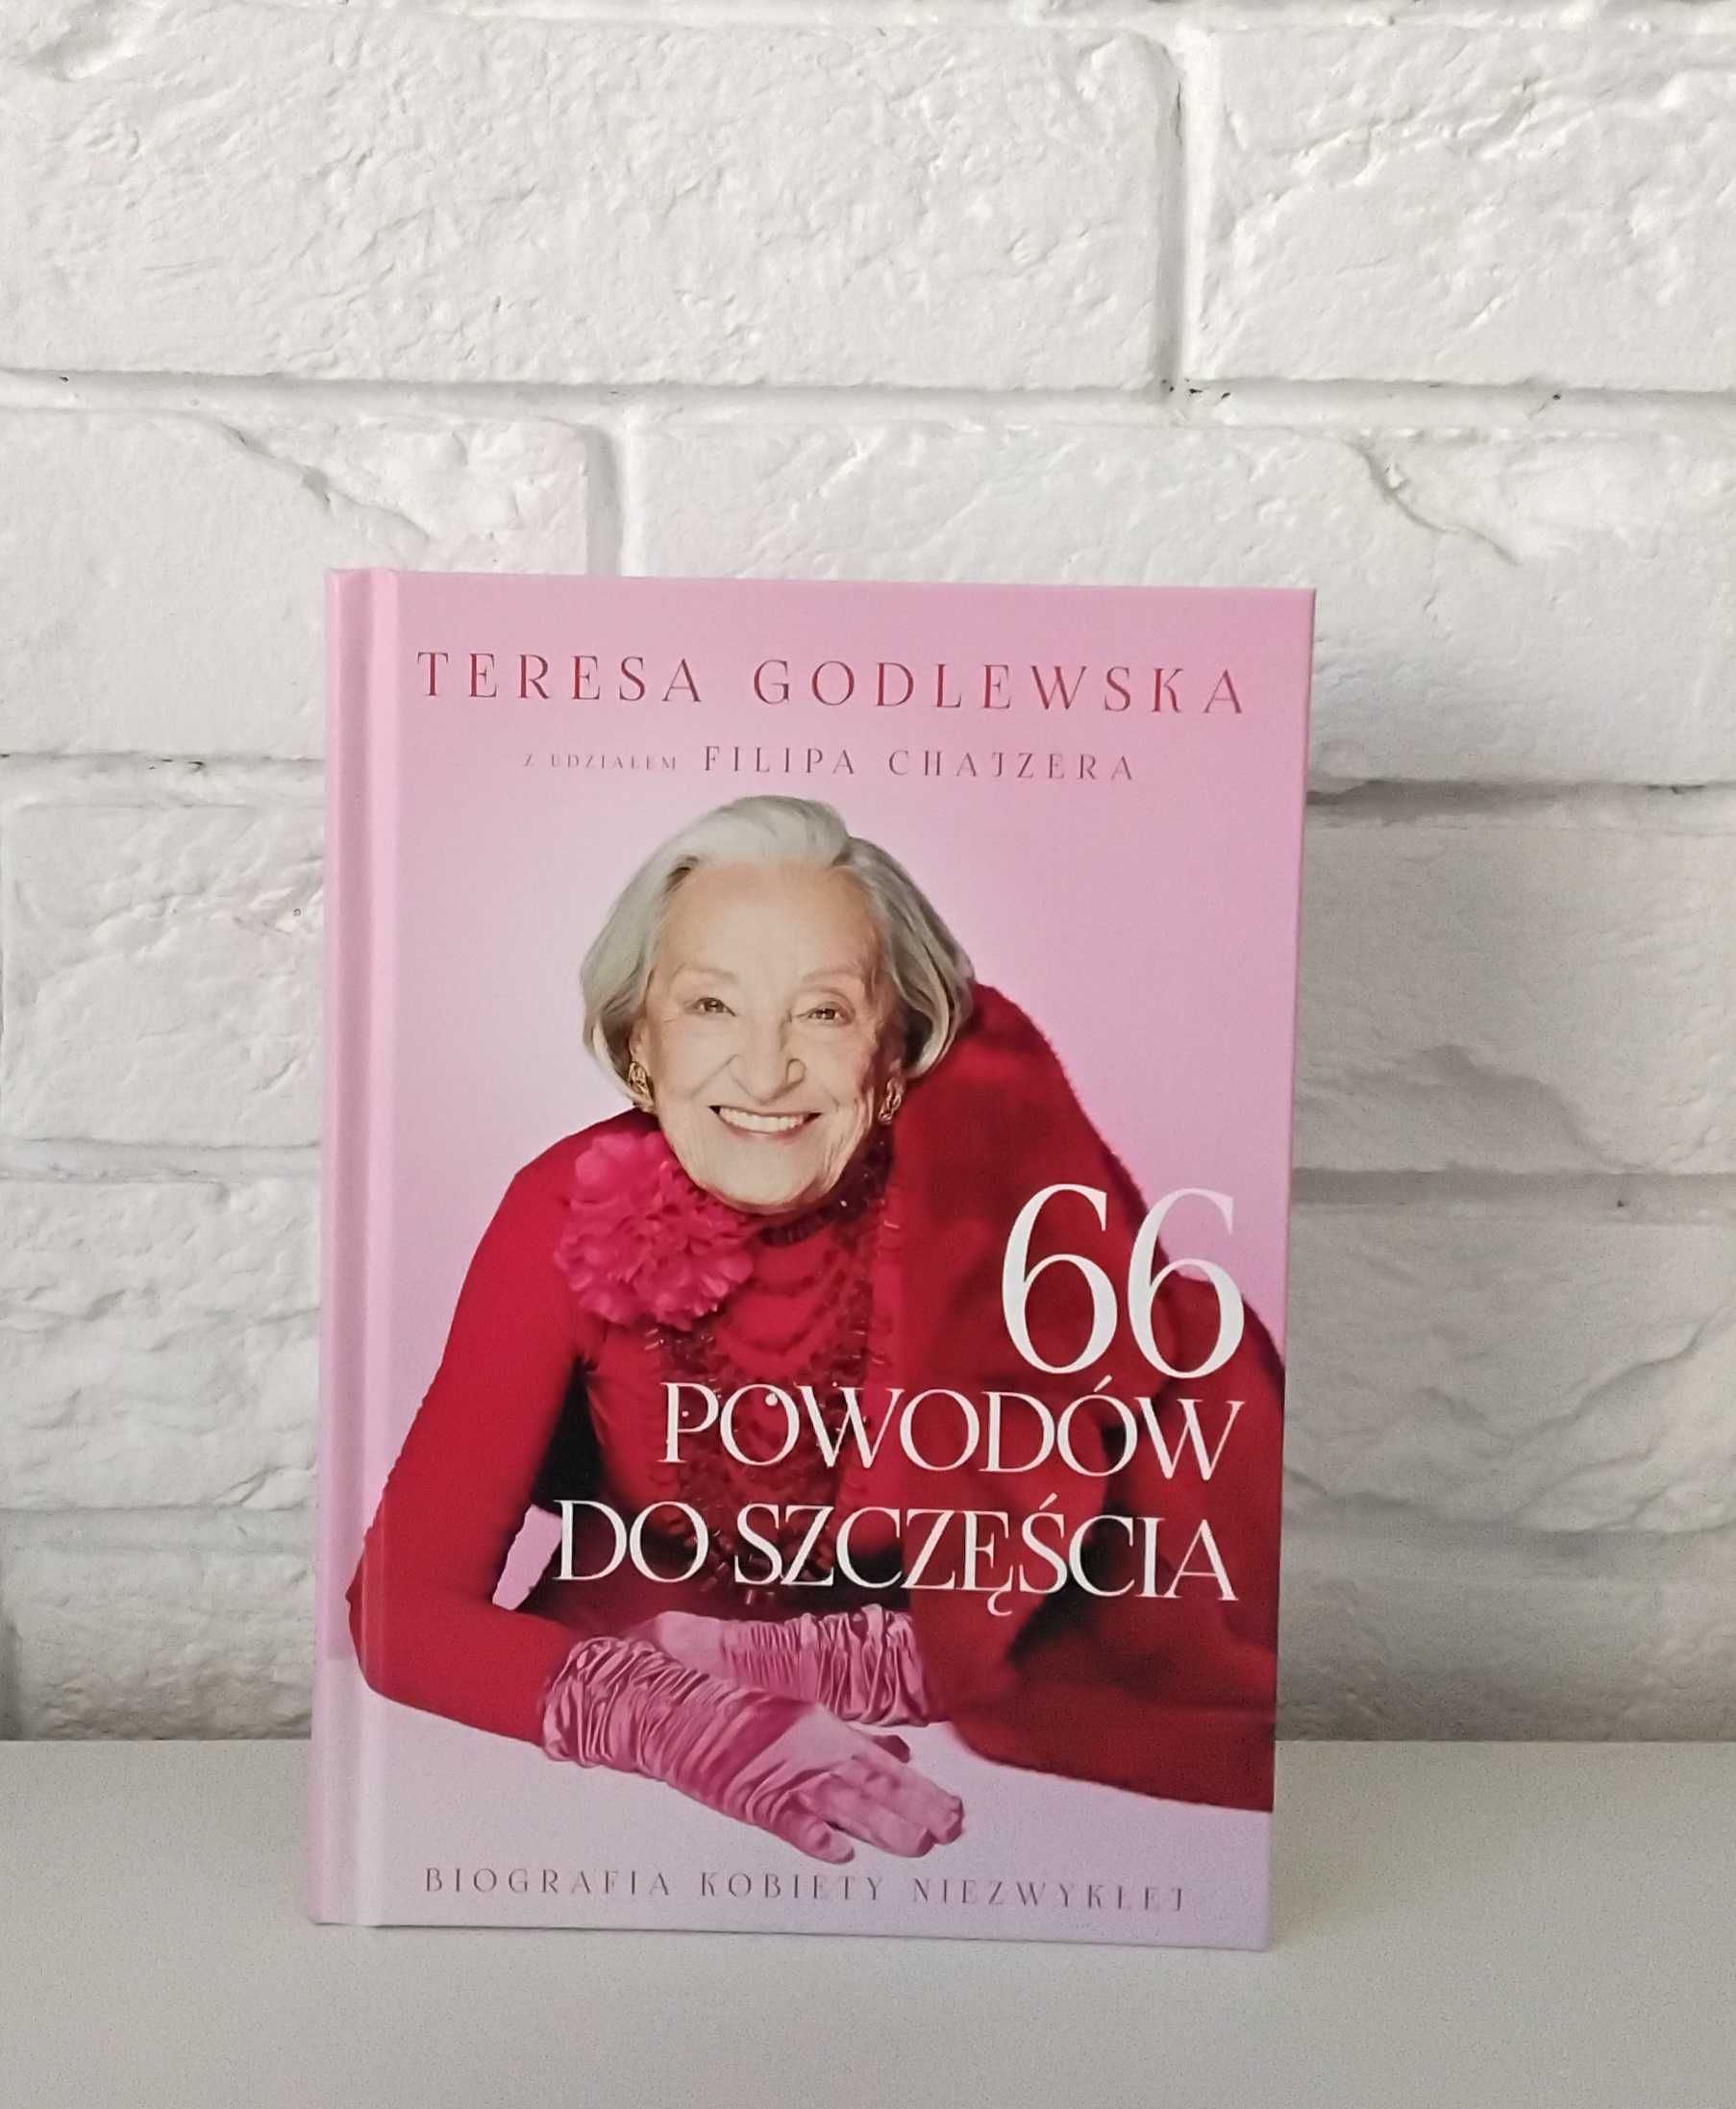 Teresa Godlewska 66 powodów do szczęścia